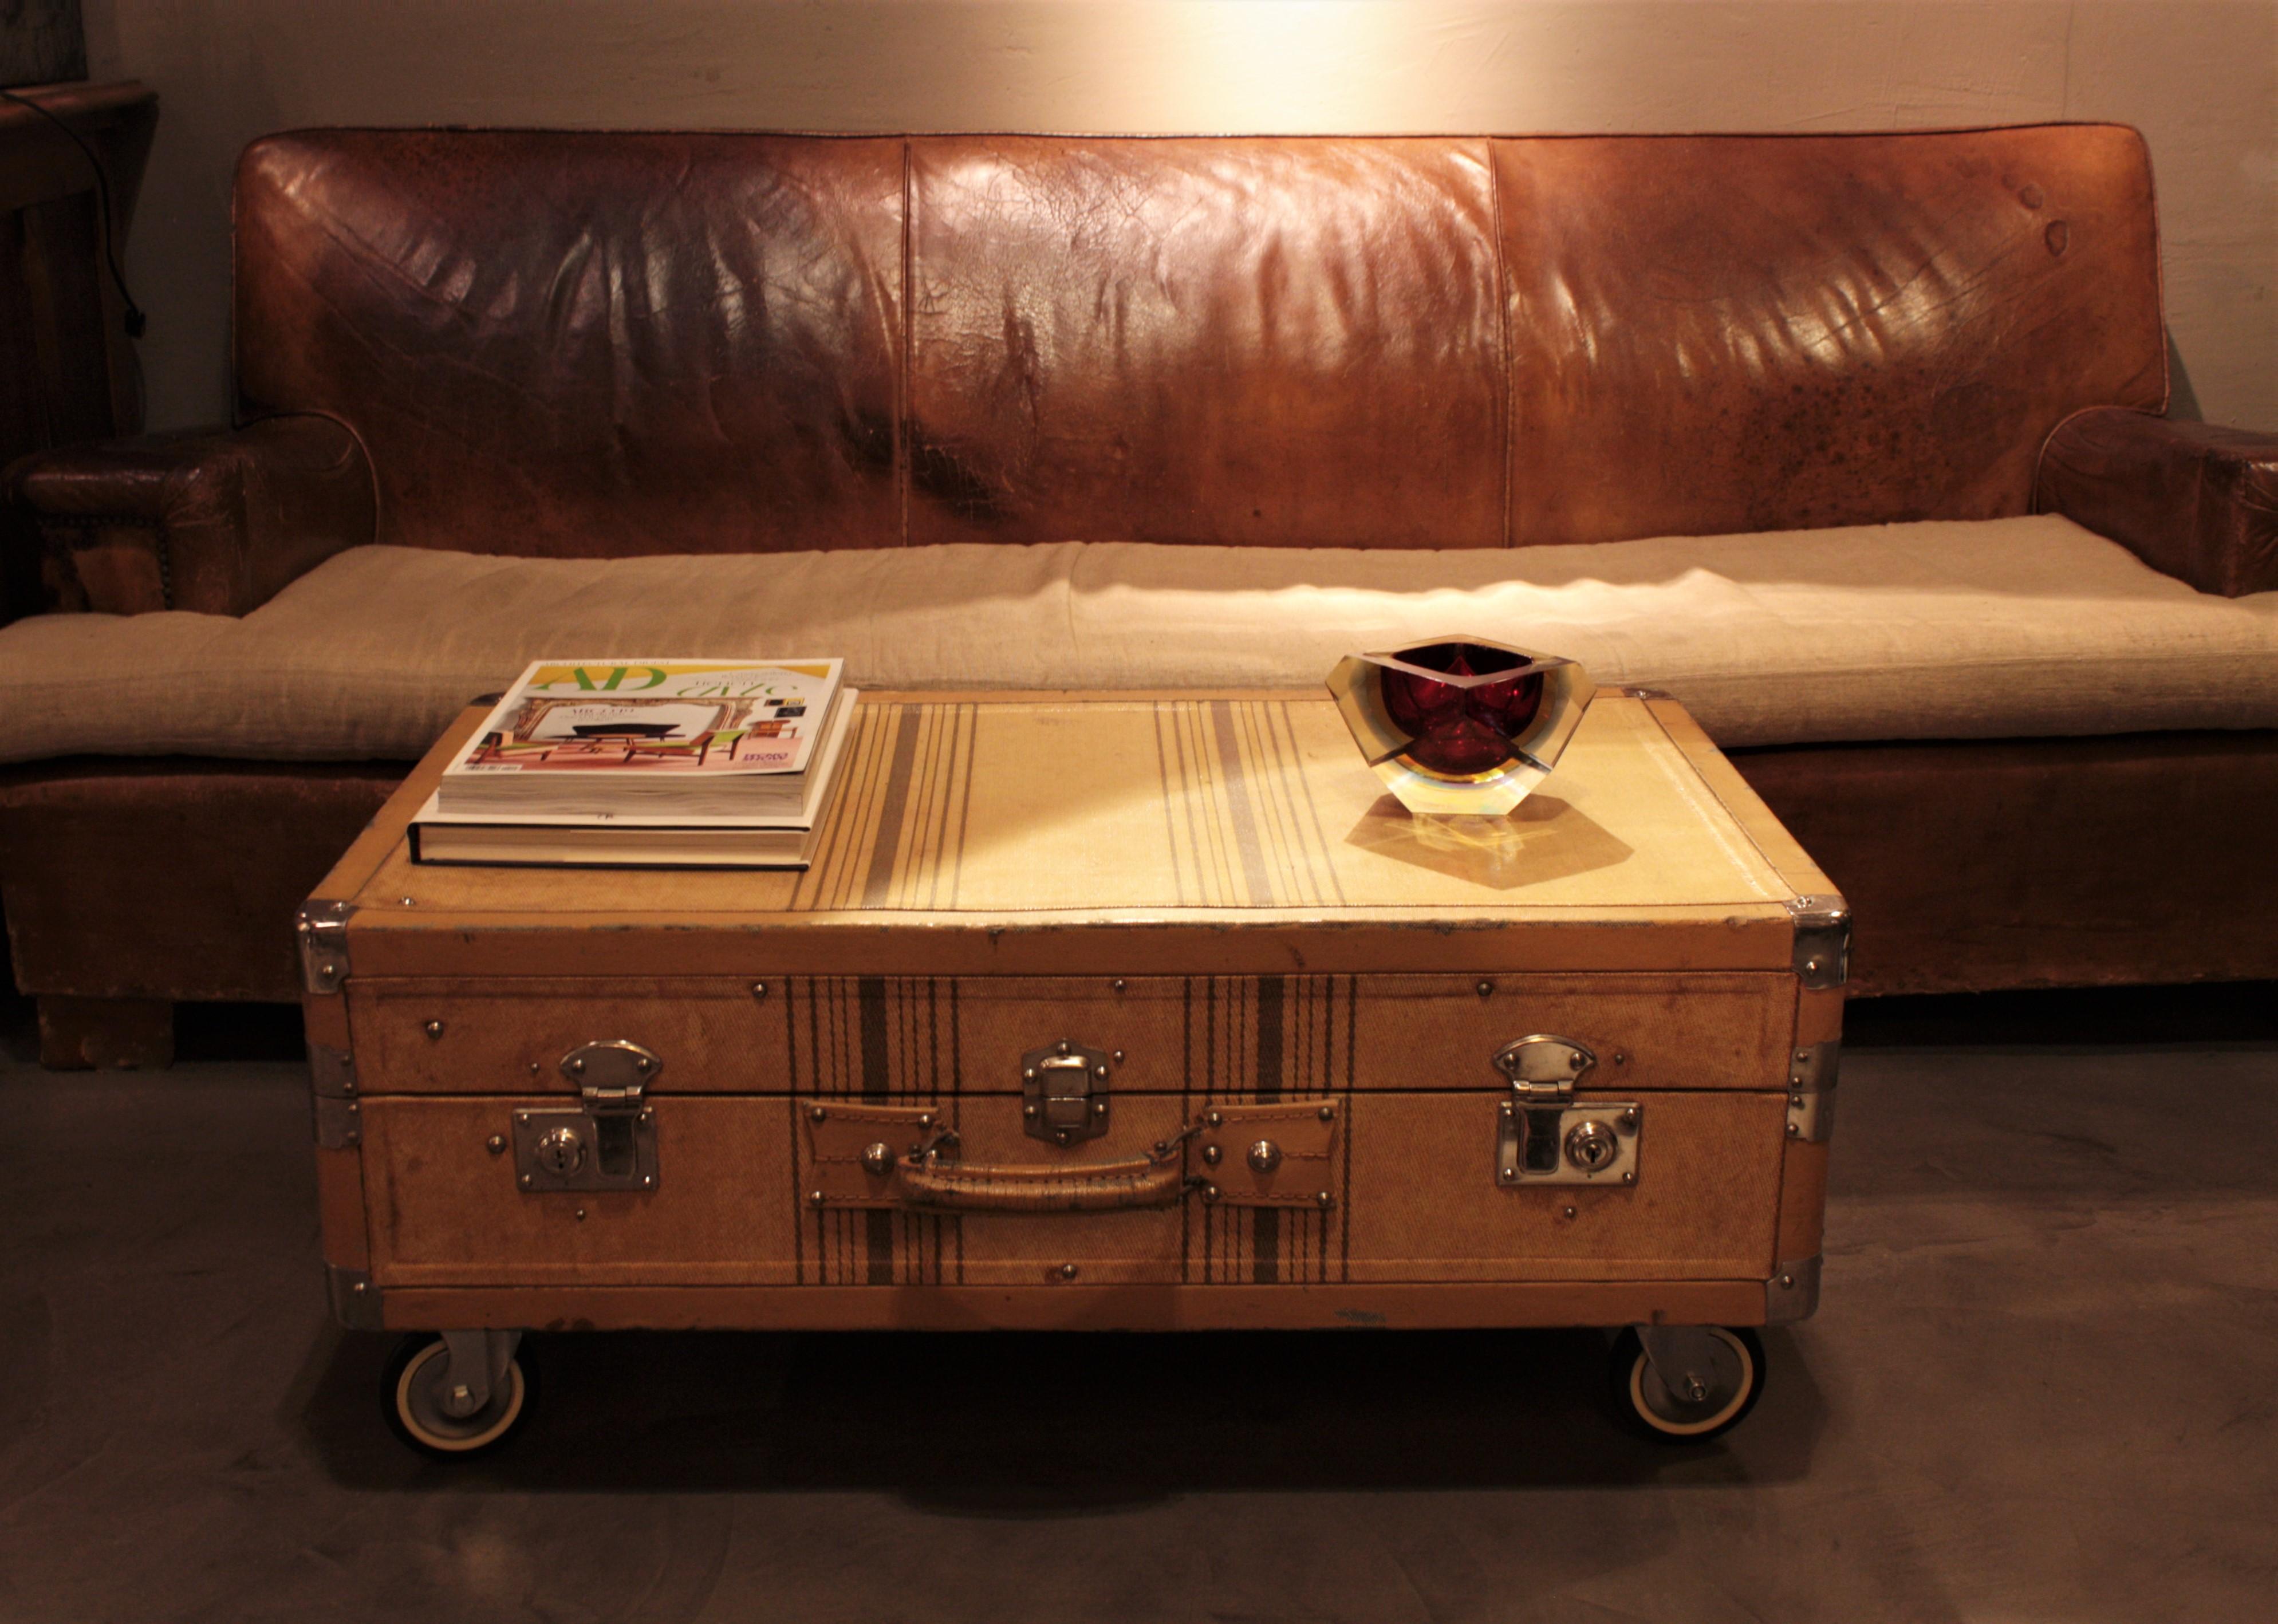 Belle valise / malle cabine en toile beige avec des rayures marron, serrures en métal et poignées en cuir, France, années 1930.
Serrures et goujons en acier chromé. Poignées en cuir sur le côté gauche et sur la partie avant. Il porte des étiquettes